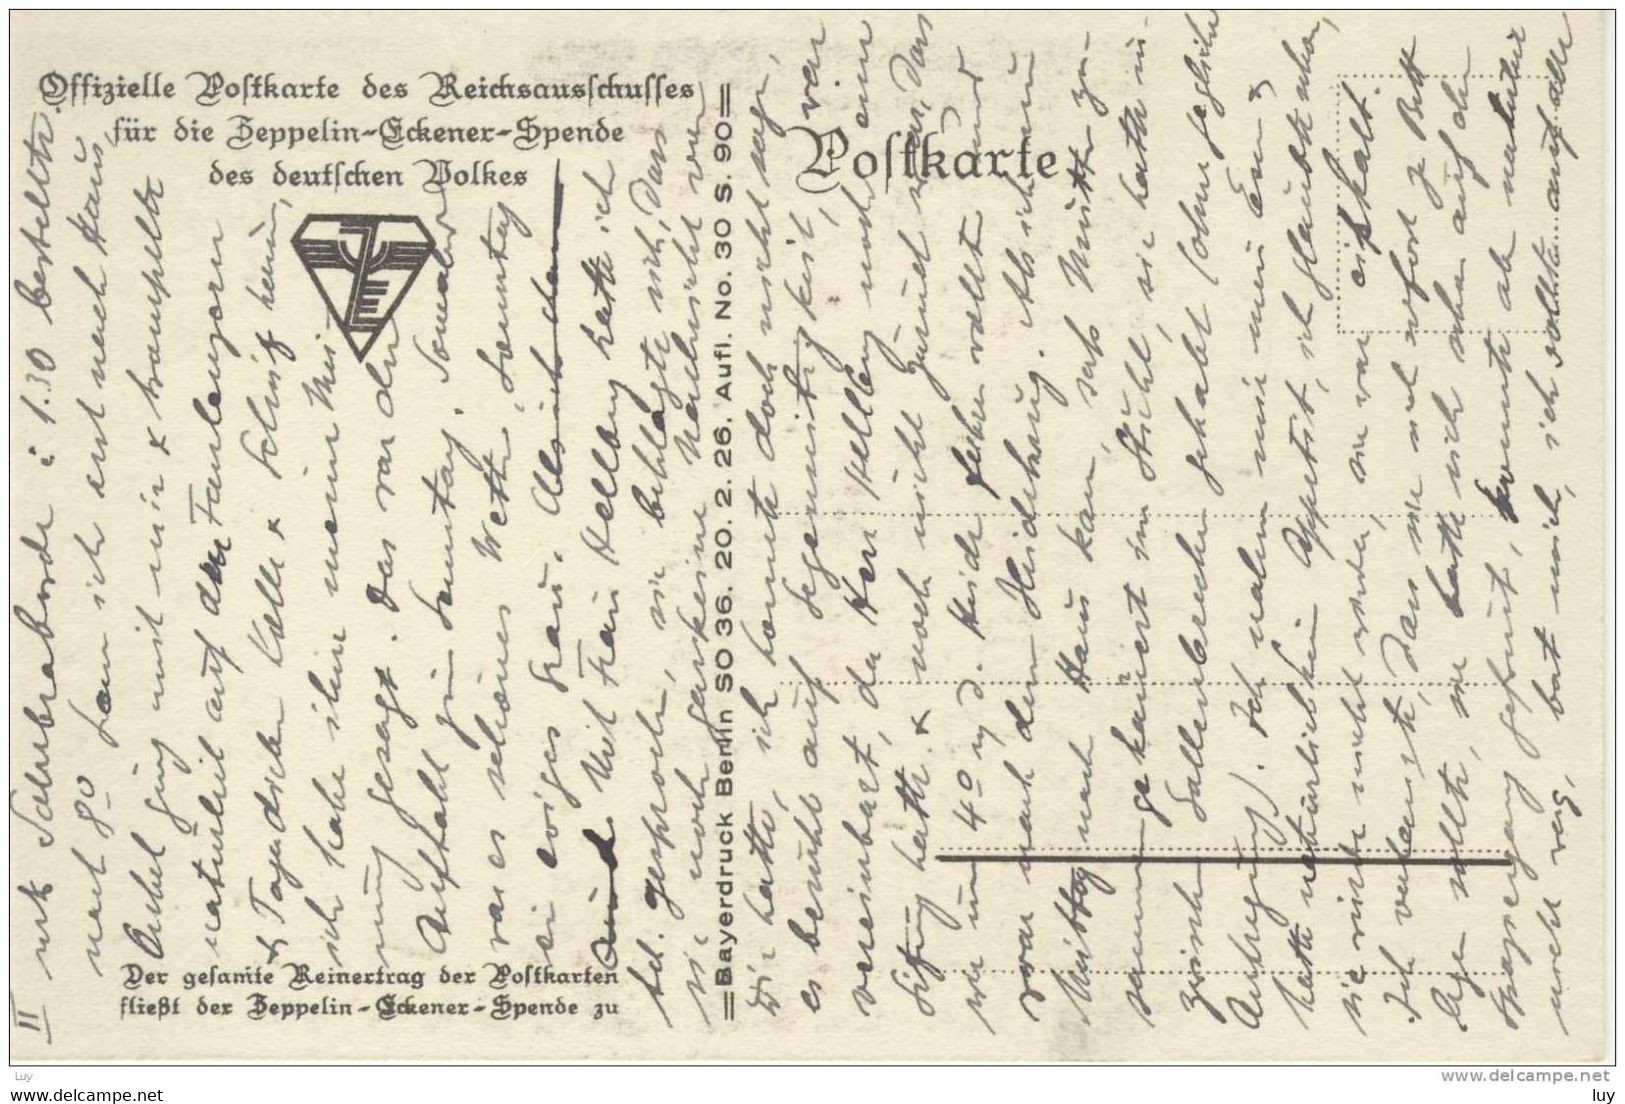 ZEPPELIN -  AK Von Otto Amtsberg - Karte Des Reichsausschusses Für Die Zeppelin Eckener-Spende, Wohlfahrtskarte - Amtsberg, Otto